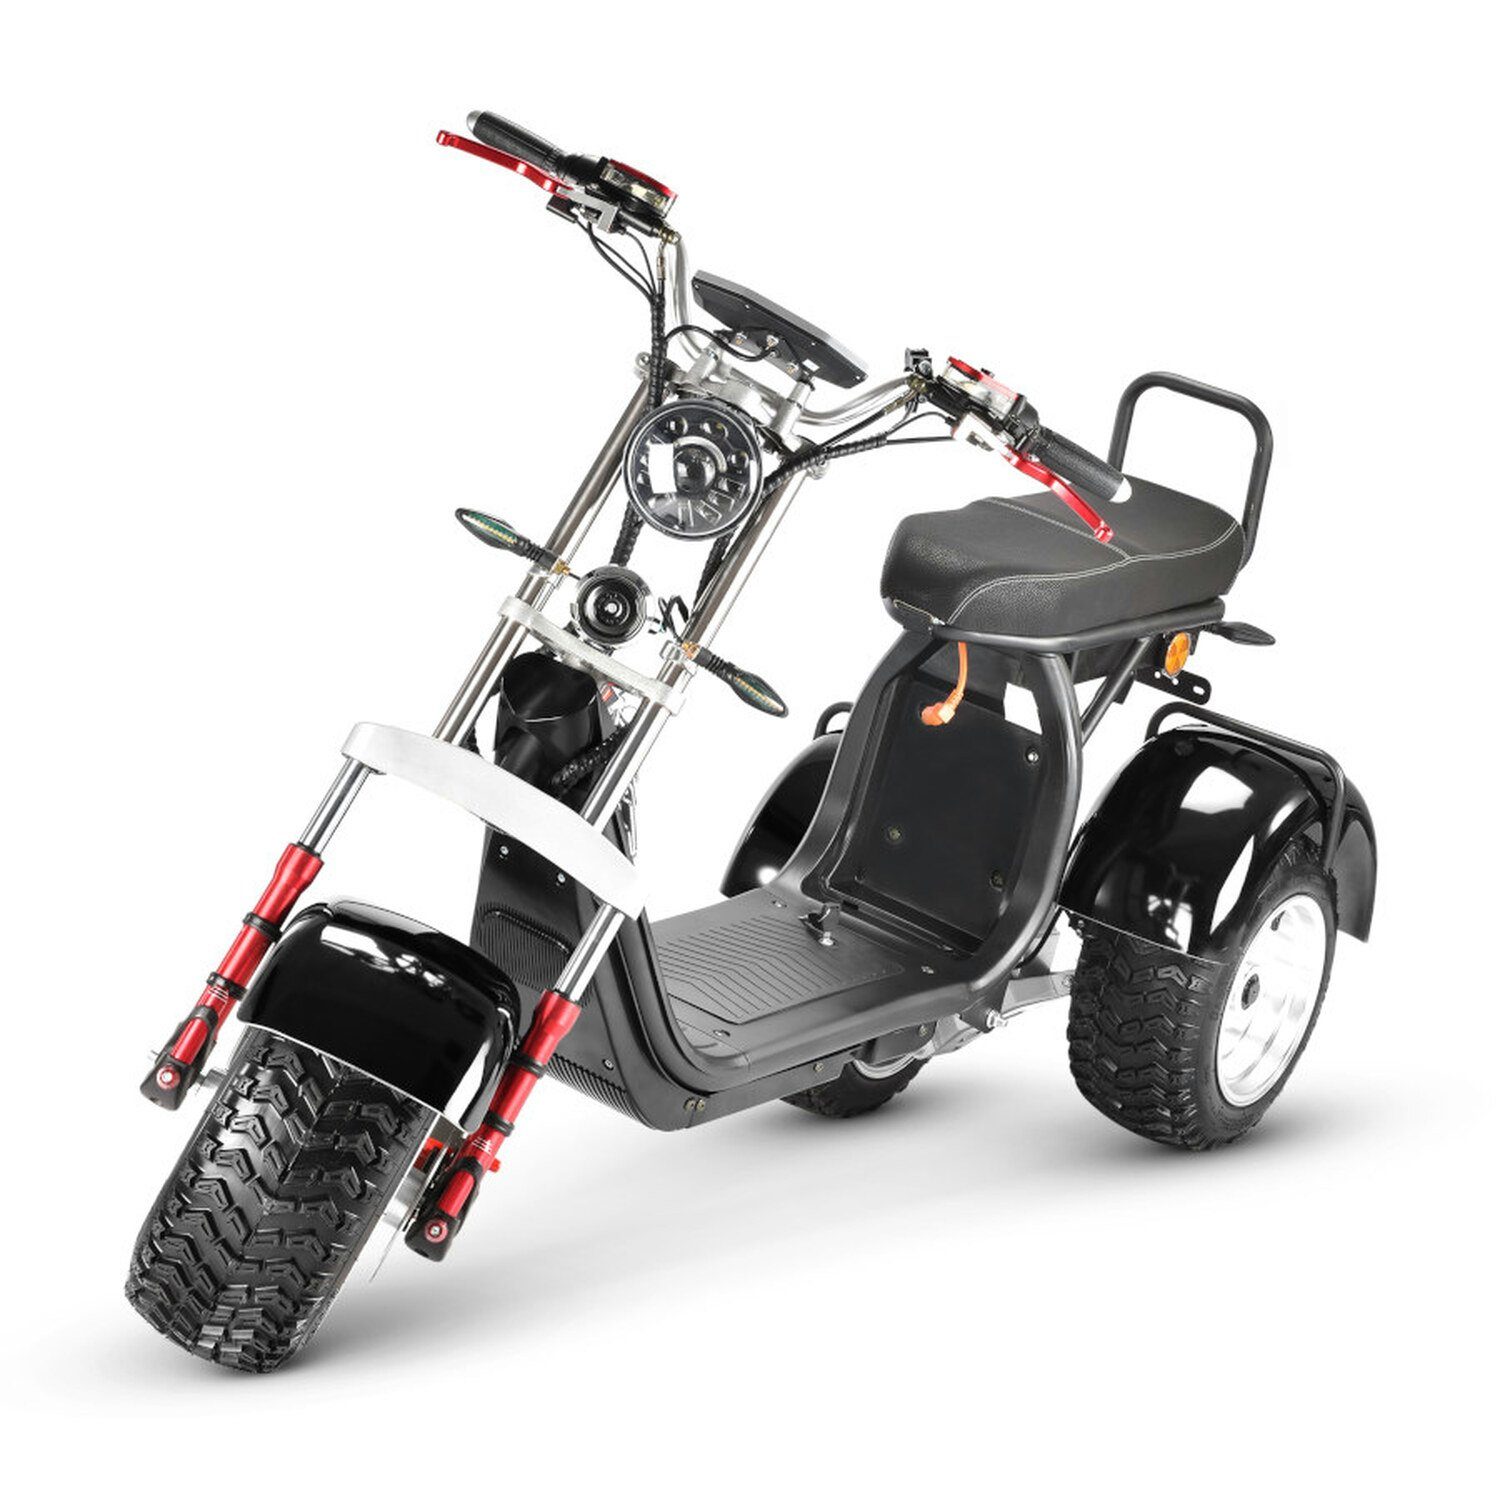 TPFLiving E-Scooter Coco Bike Fat Trike - Elektroroller -Akku: 1 x 60  Volt/20Ah, 35 km/h, Roller elektro ab 14 Jahren mit Scheibenbremsen -  Farbe: schwarz, MAßE: LxBxH: 195 x 120 x 114 cm - Roller elektro -  Tragfähigkeit: 200 kg